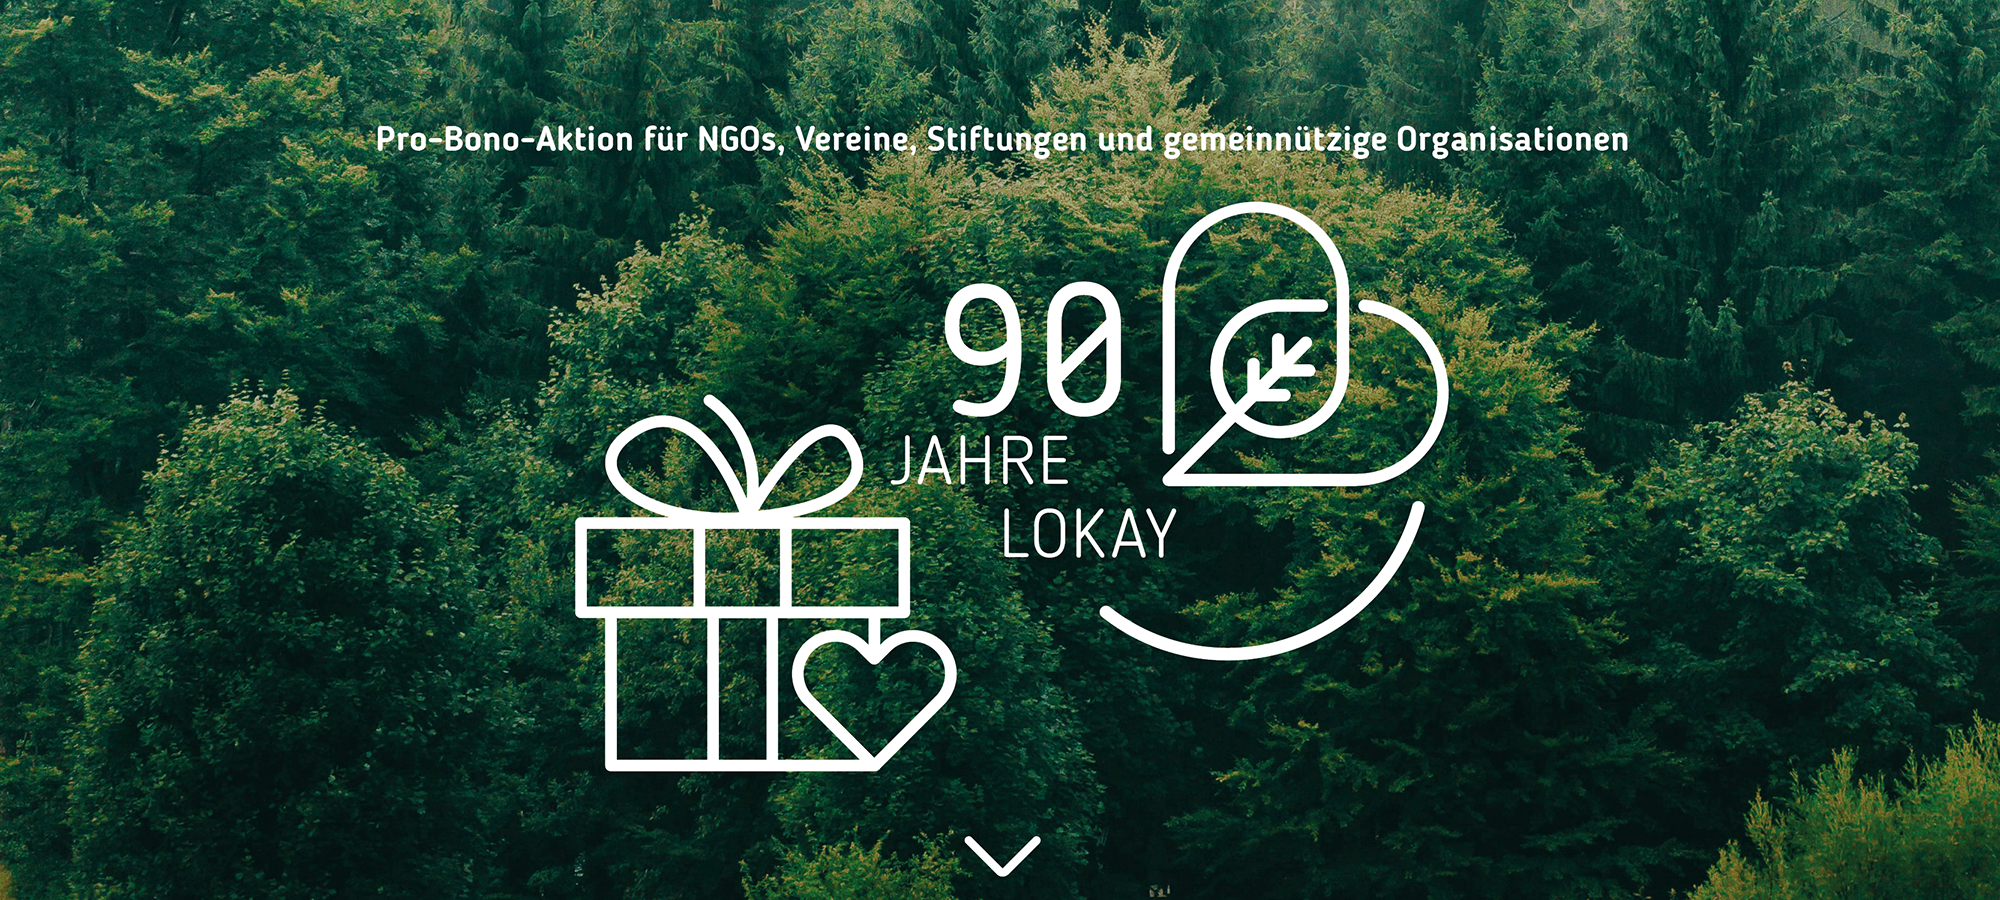 Foto: Filip Zrnzevic / unsplash Text vor dem Hintergrund eines Waldes, von oben fotografiert: 90 Jahre Lokay. Pro-Bono-Aktion für NGOs, Vereine, Stiftungen und gemeinnützige Organisationen